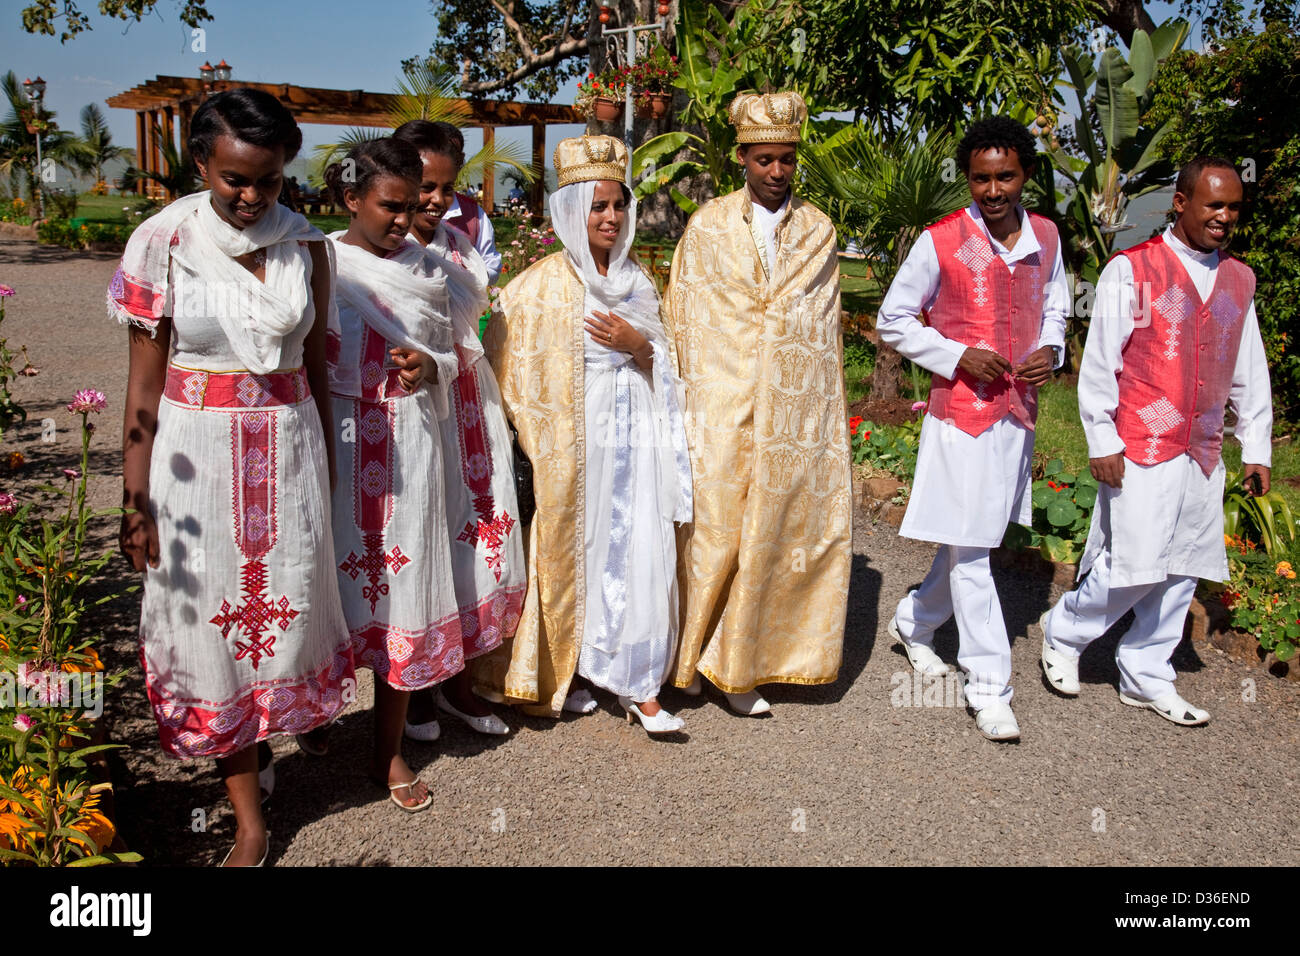 Ethiopian Wedding Party, Lake Tana, Bahir Dar, Ethiopia Stock Photo